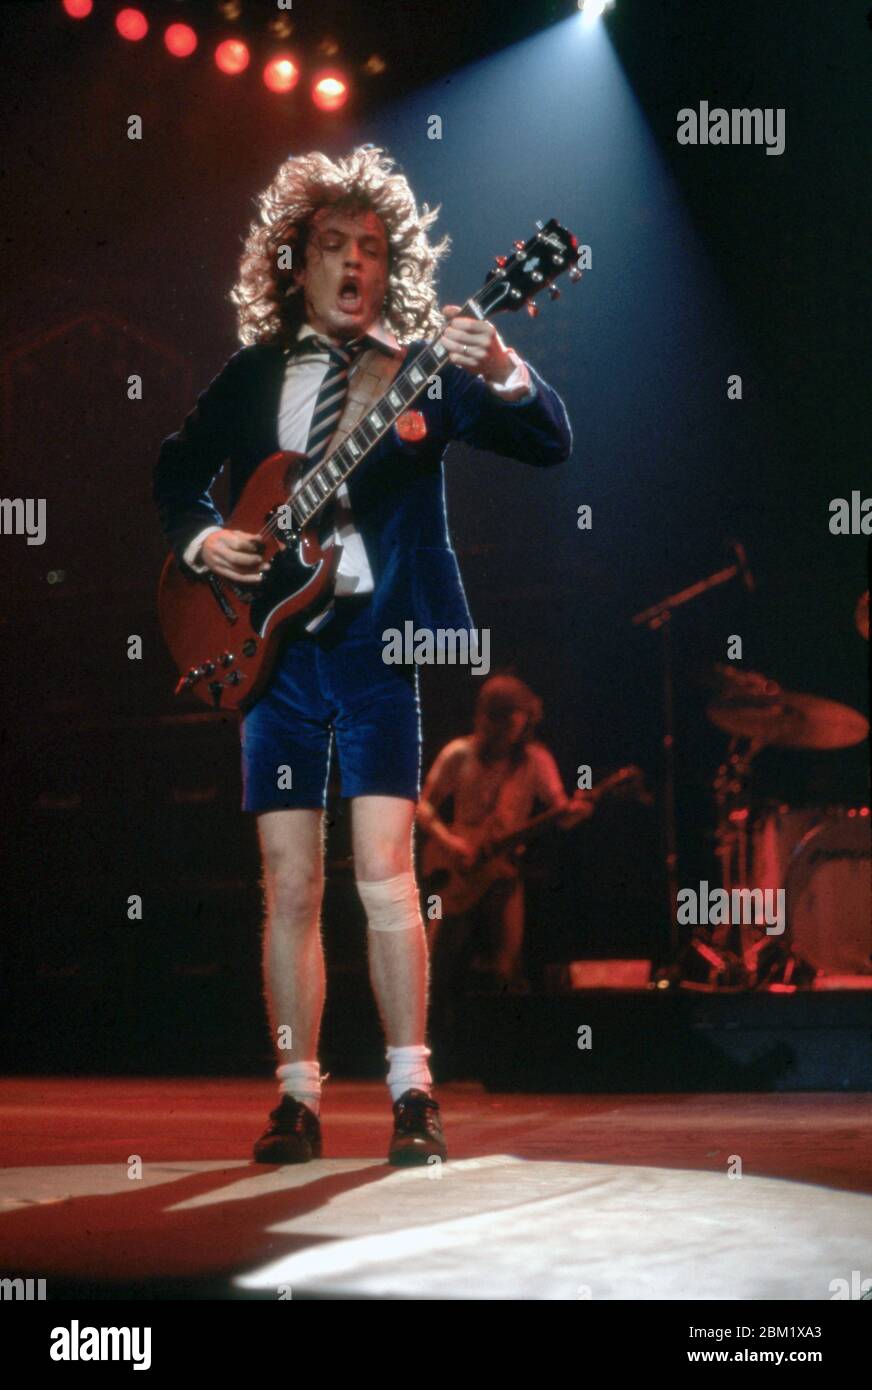 DETROIT - 17 NOVEMBRE : Angus Young, guitariste principal pour AC/DC,  portant son uniforme d'écolier britannique emblématique et jouant son SG  Gibson rouge, se produit lors de la tournée Flick of the